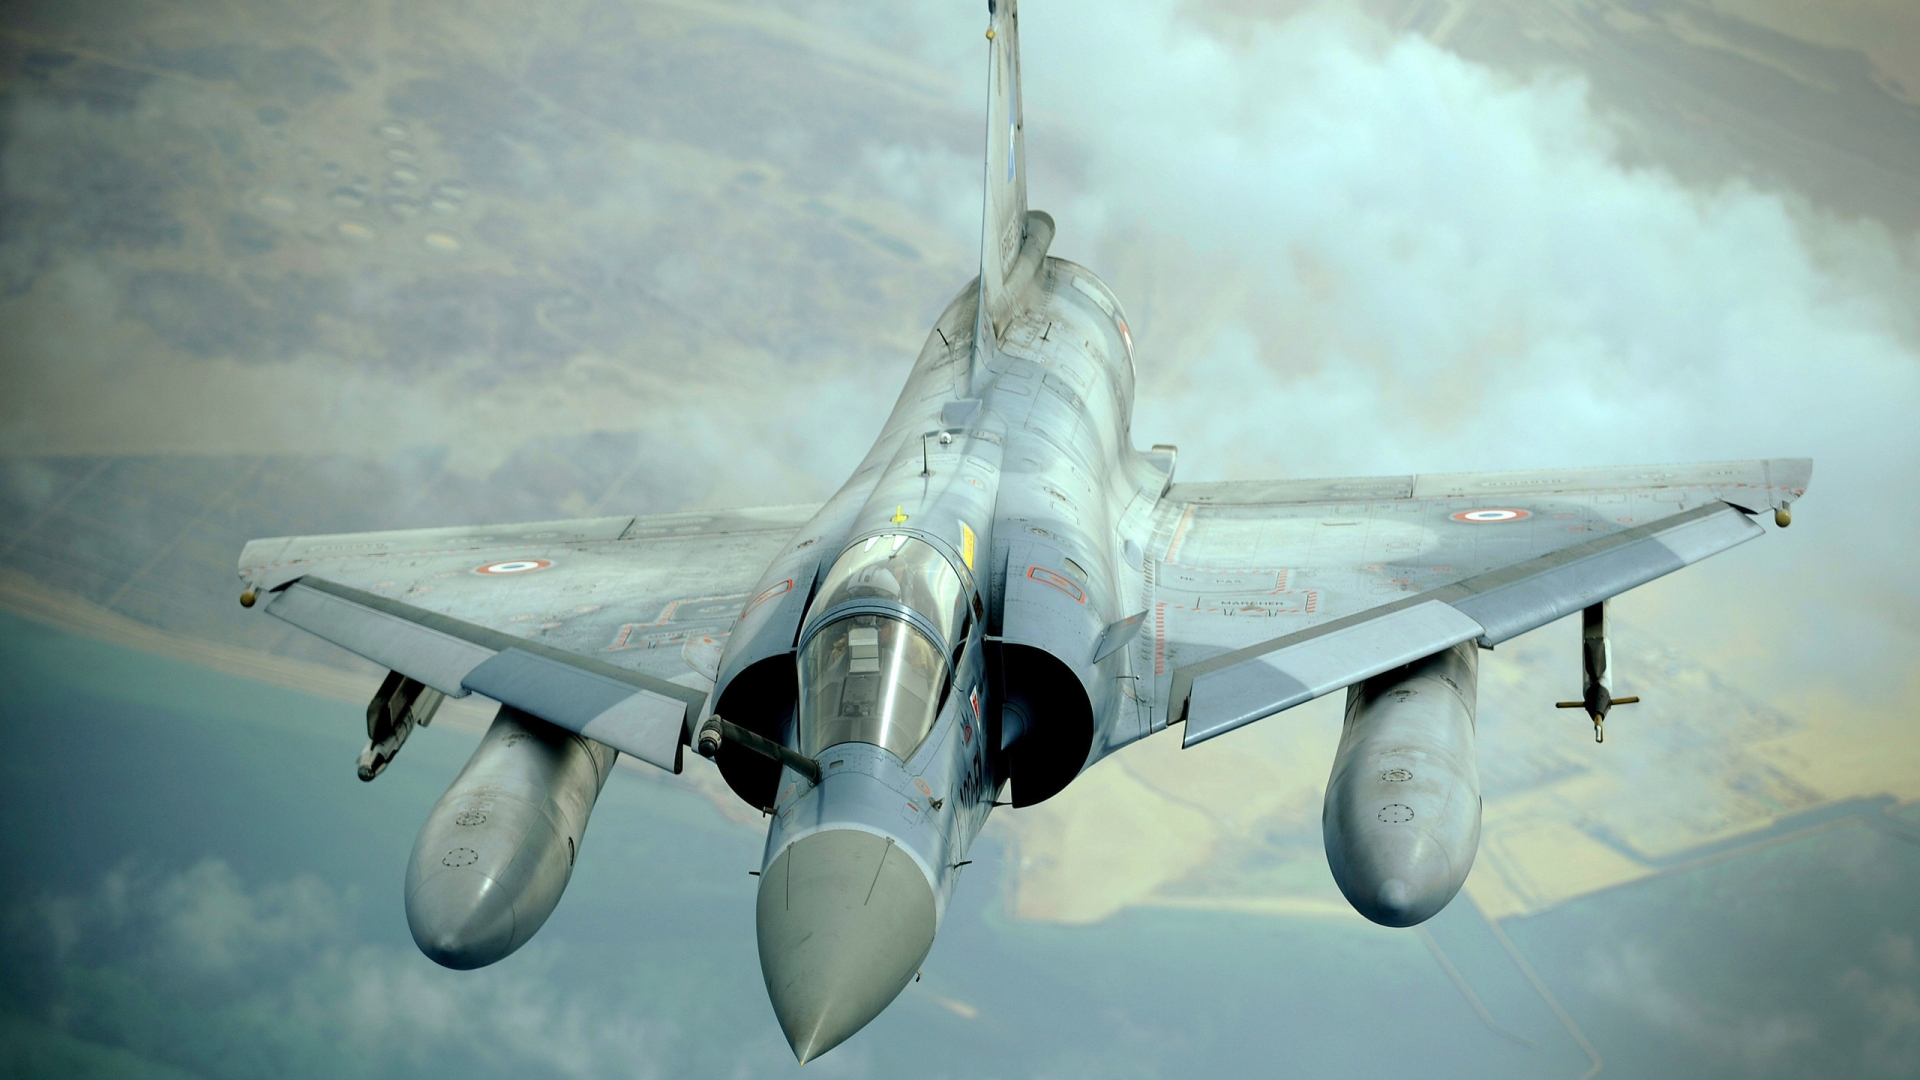 Dassault Mirage 2000 for 1920 x 1080 HDTV 1080p resolution